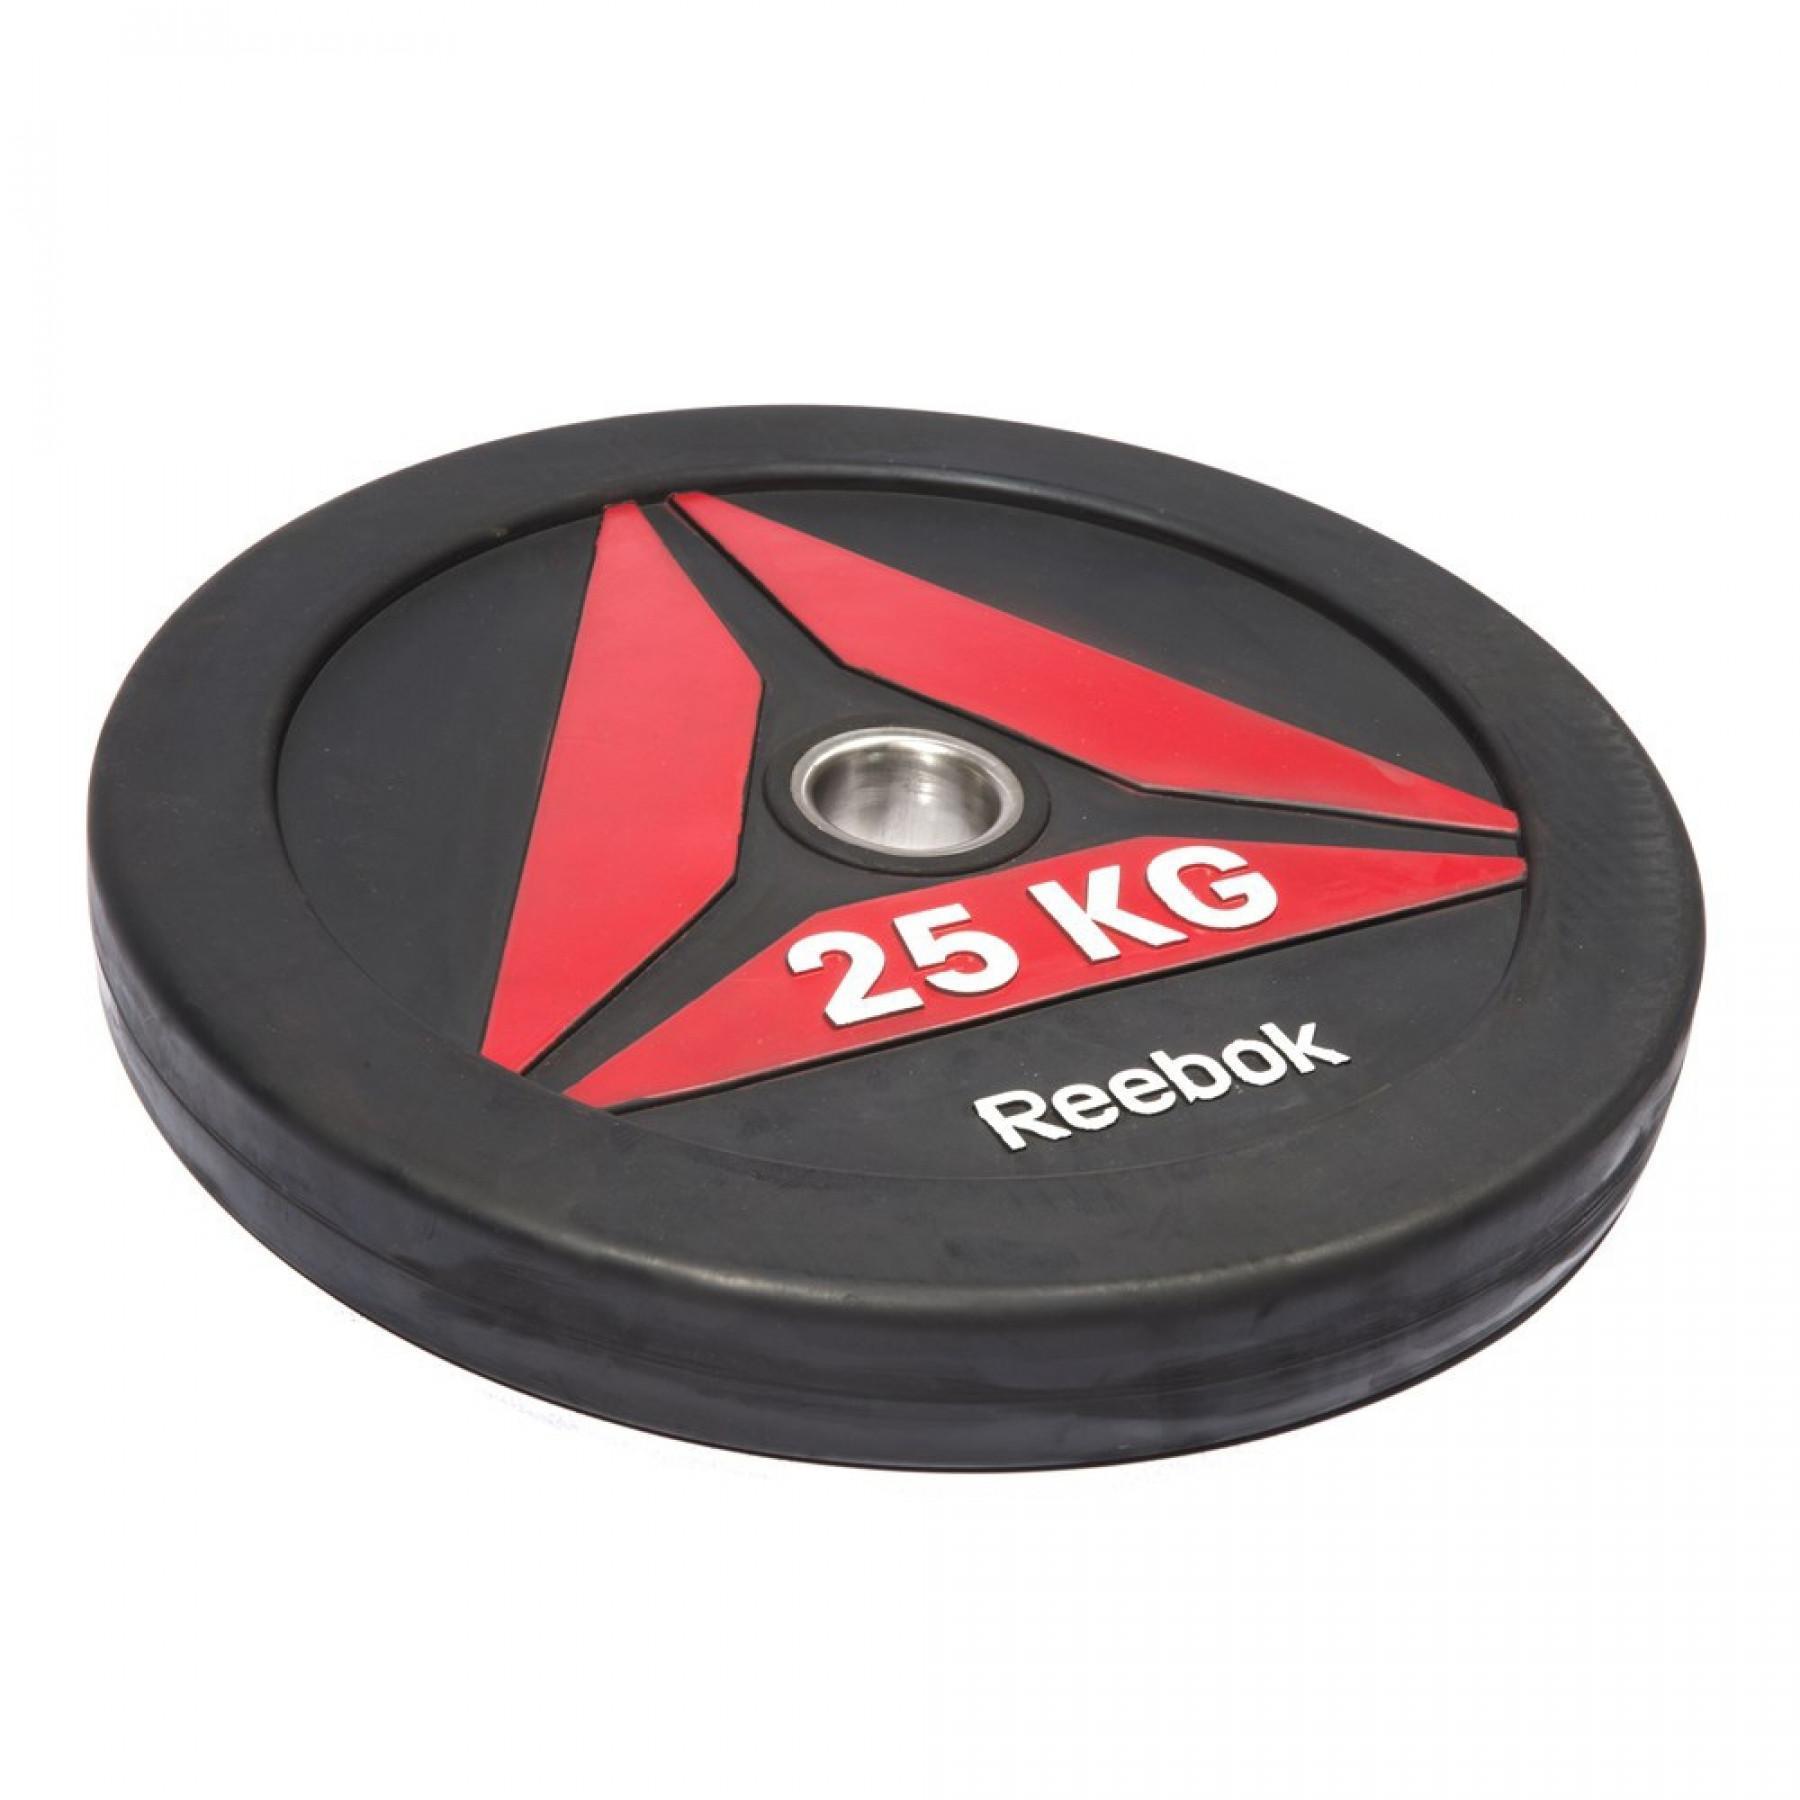 Disque bumper Reebok 5 kg